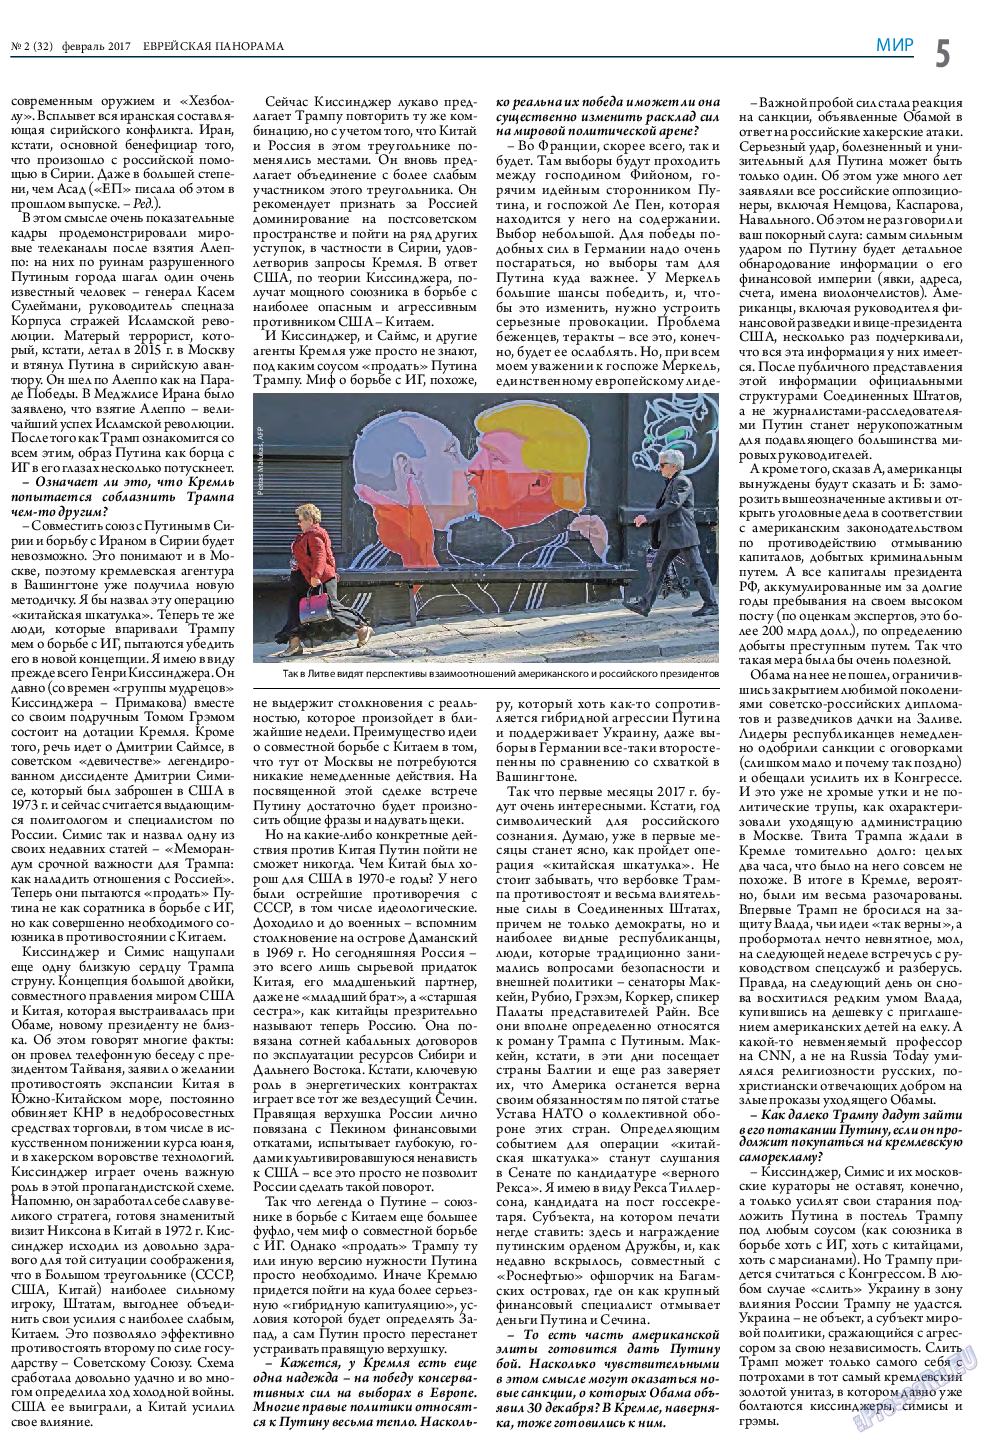 Еврейская панорама (газета). 2017 год, номер 2, стр. 5